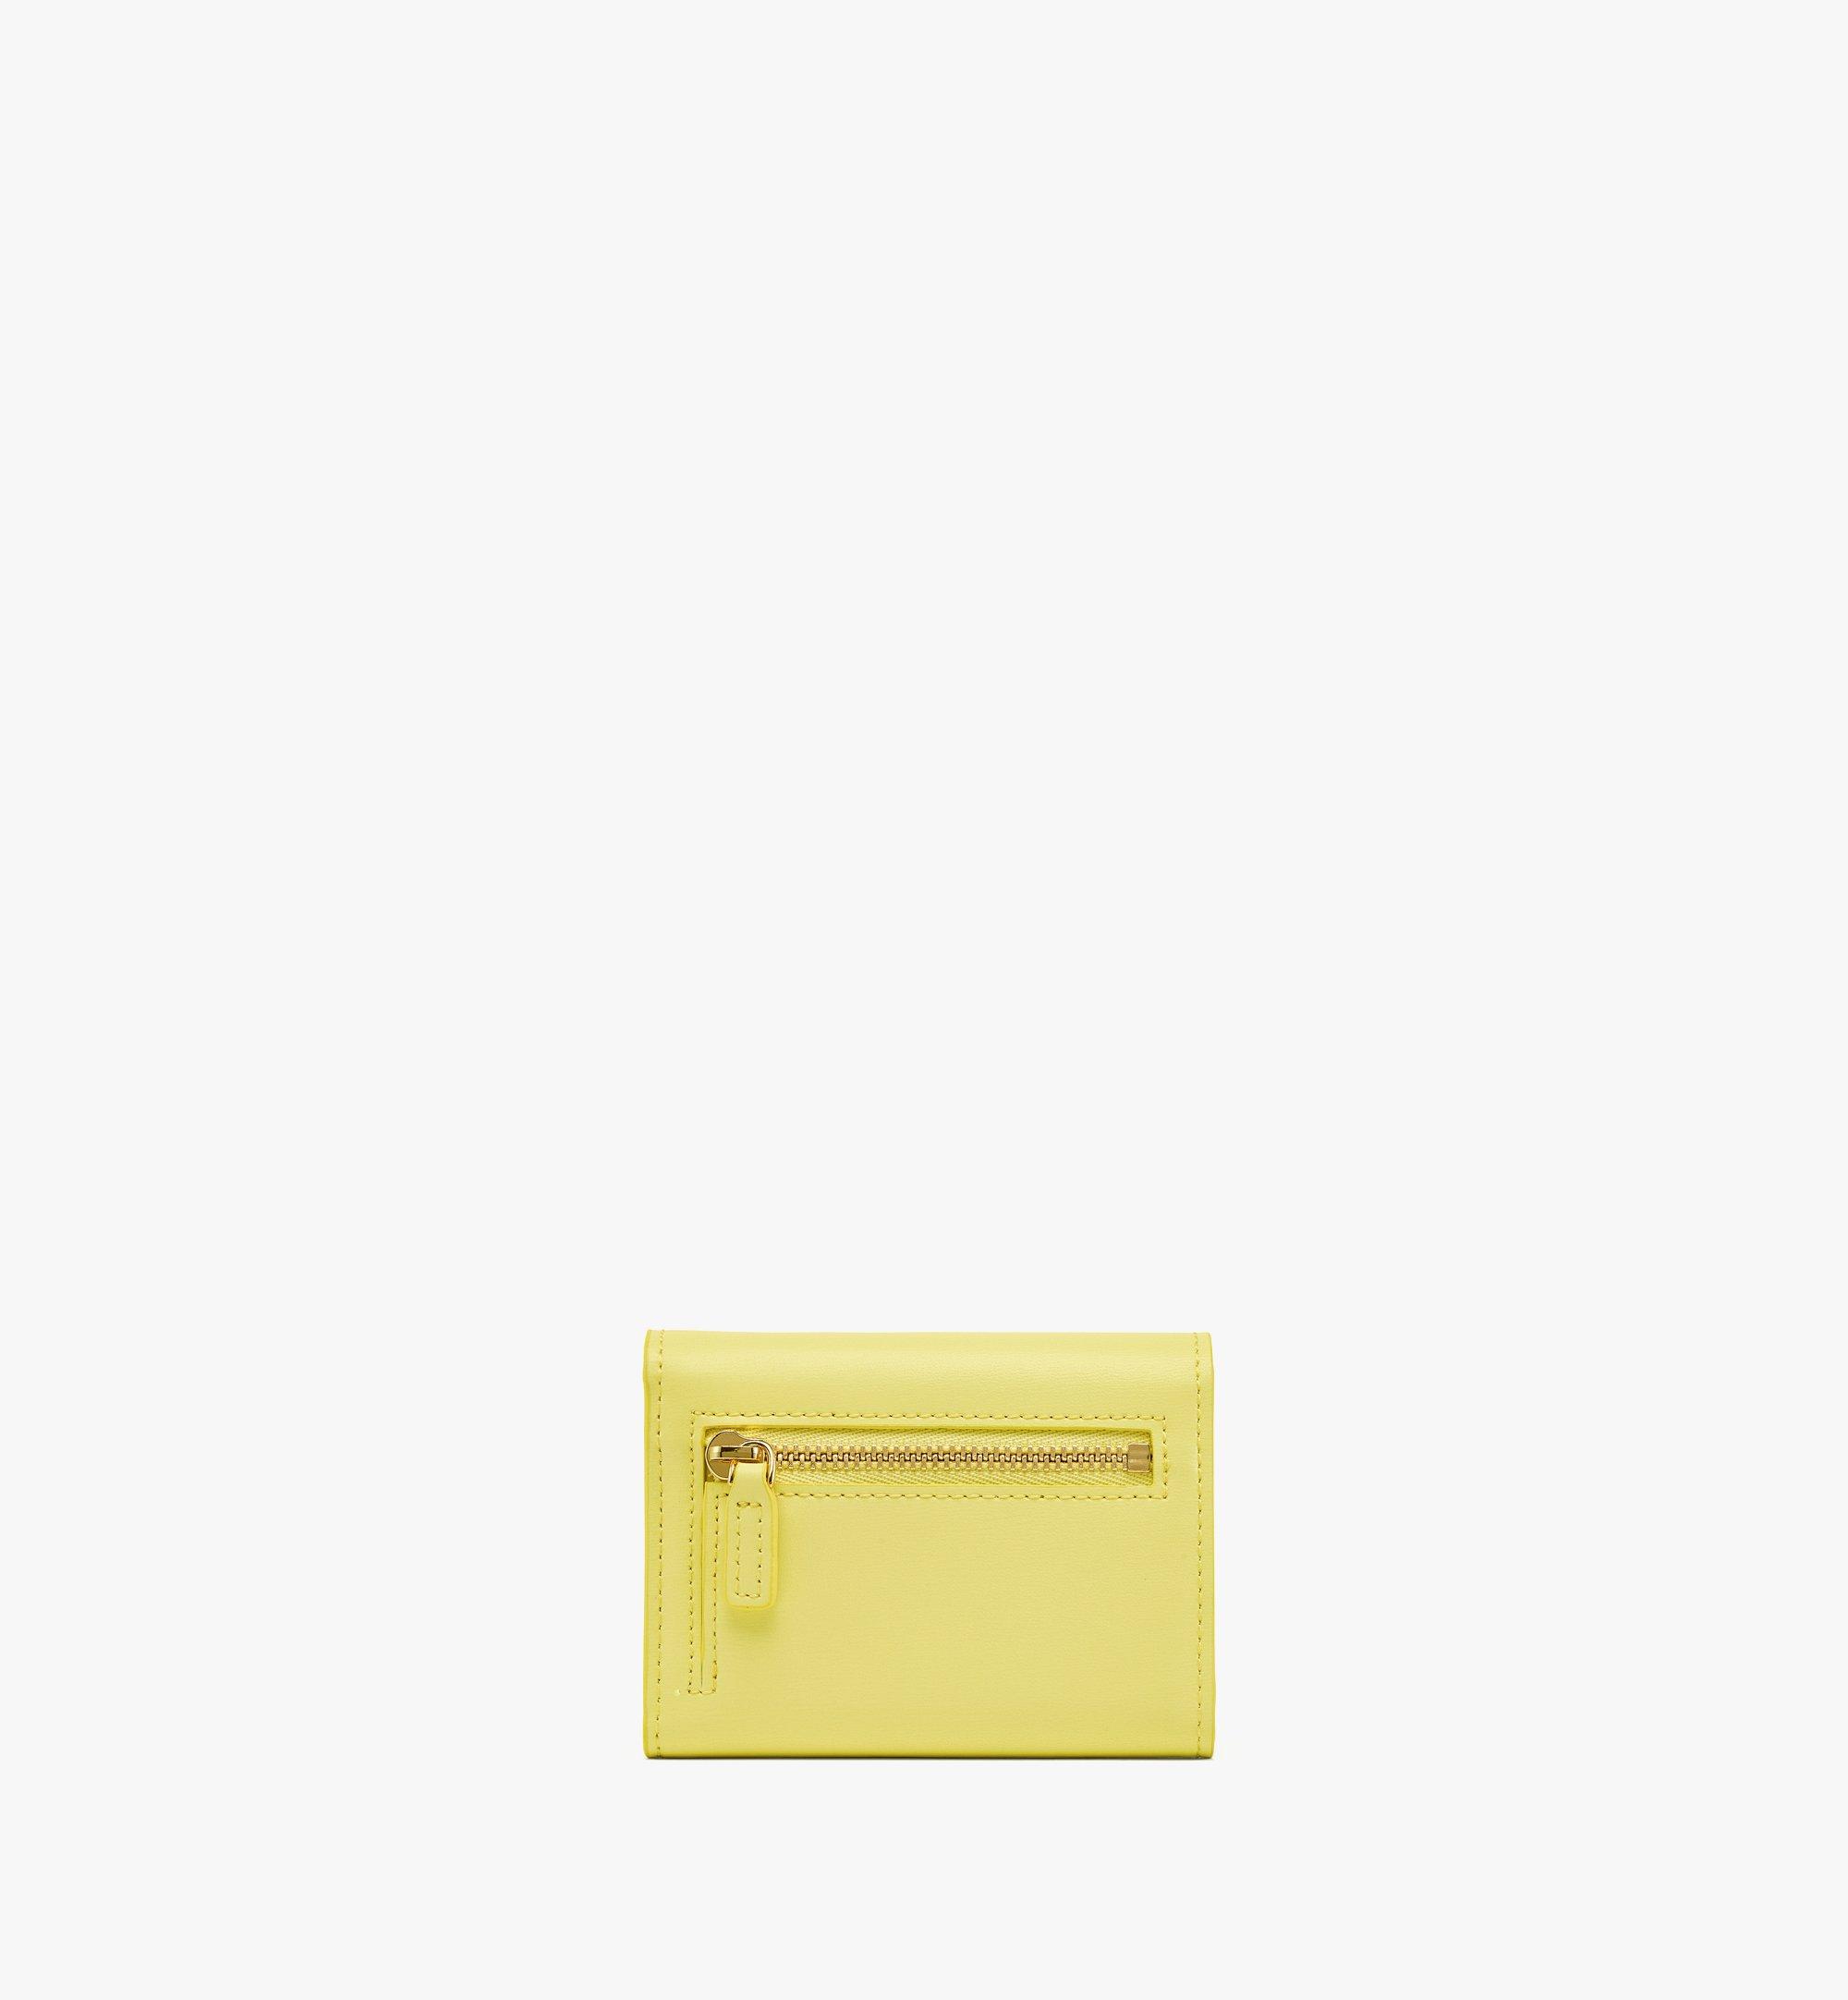 MCM Dreifach gefaltete Patricia Brieftasche aus spanischem Leder Yellow MYSBAPA01Y4001 Noch mehr sehen 2